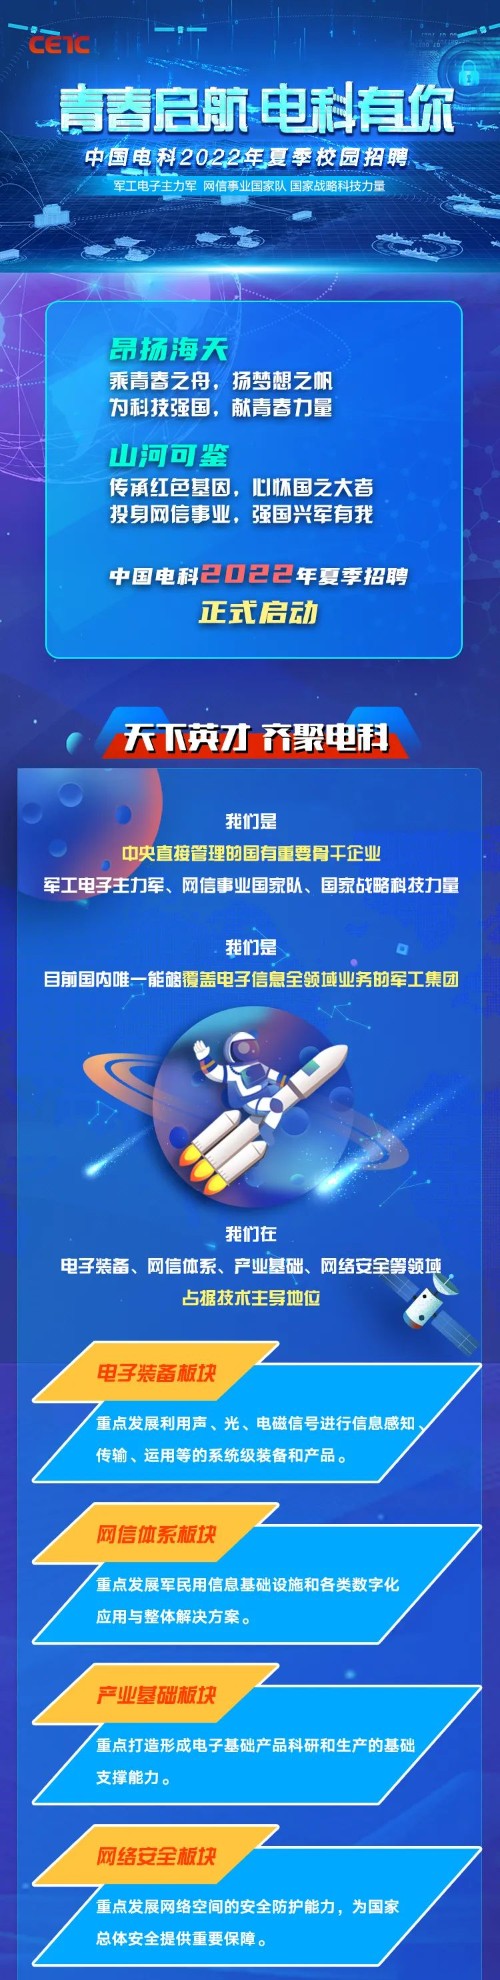 商帝国网管理学堂-【校招】中国电科2022年夏季校园招聘正式启动